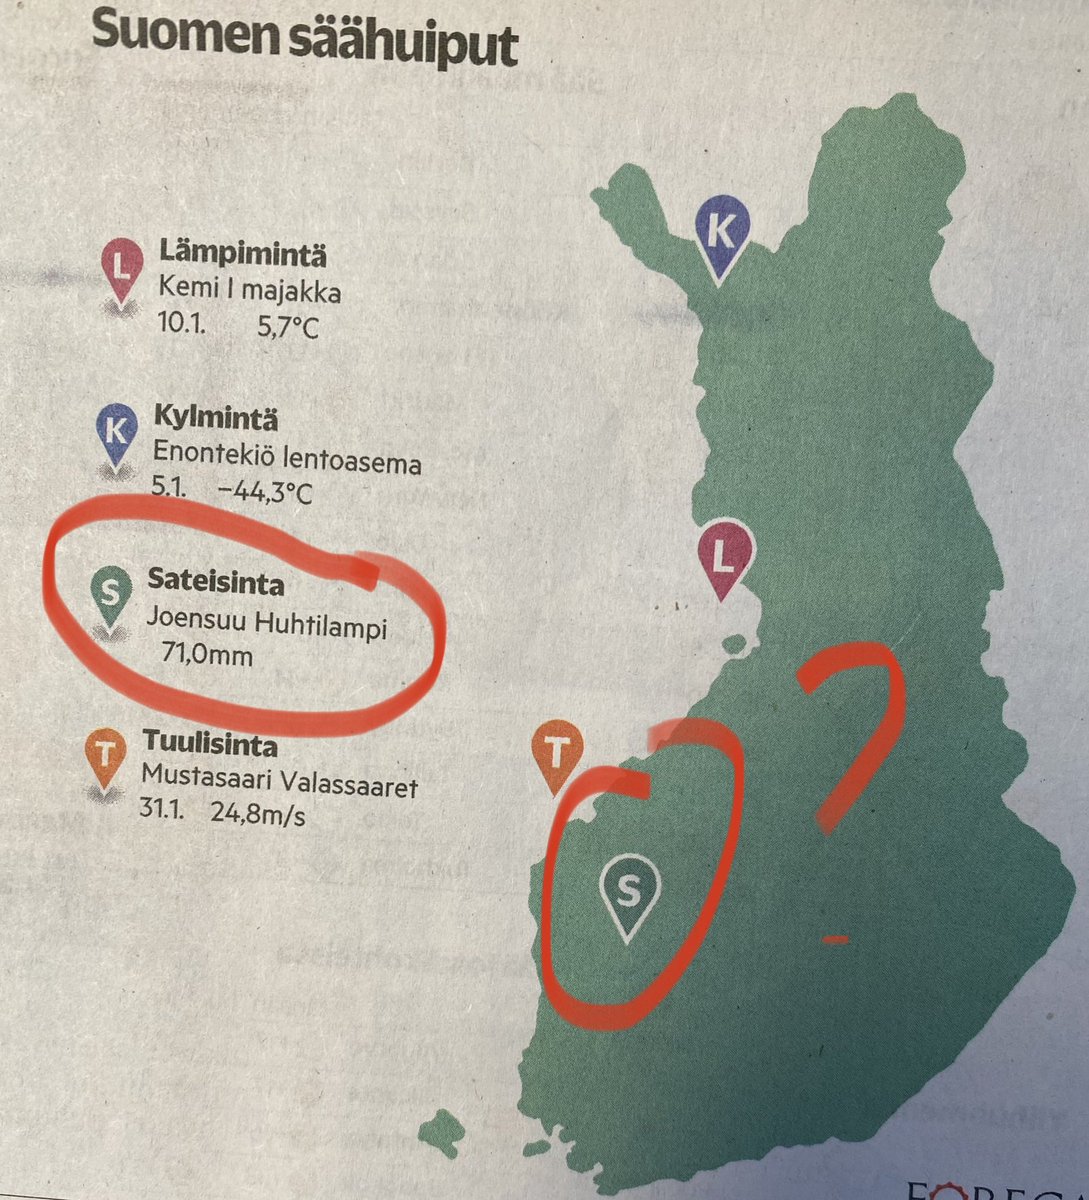 Missä teidän Joensuu on? Turun Sanomien Joensuu sijaitsee Parkanon paikkeilla. 😳 #maantieto